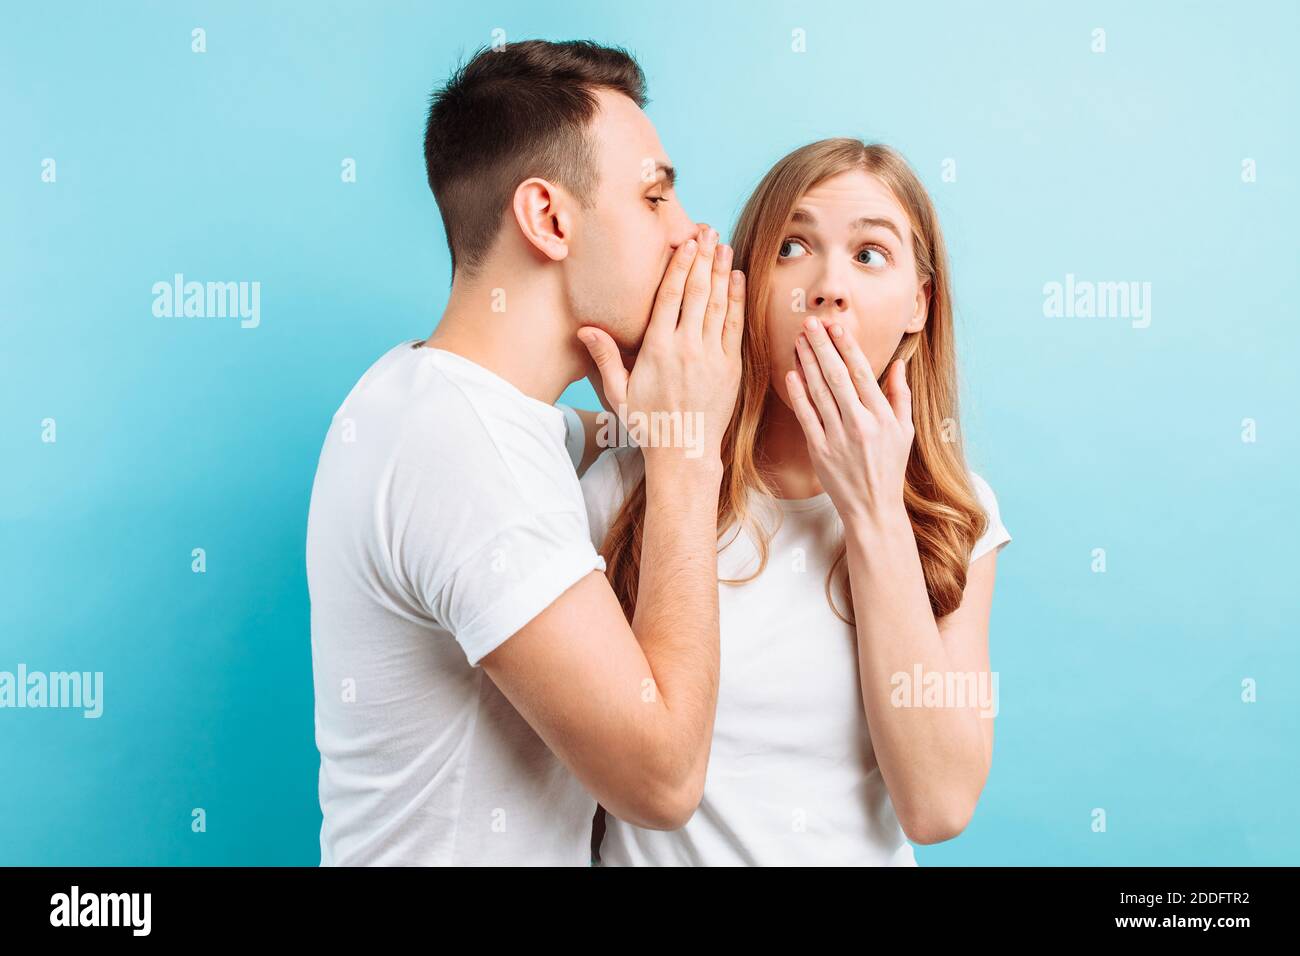 Ein Mann flüstert einer Frau ins Ohr und erzählt ihr etwas Geheimes, schockierend, auf blauem Hintergrund. Stockfoto